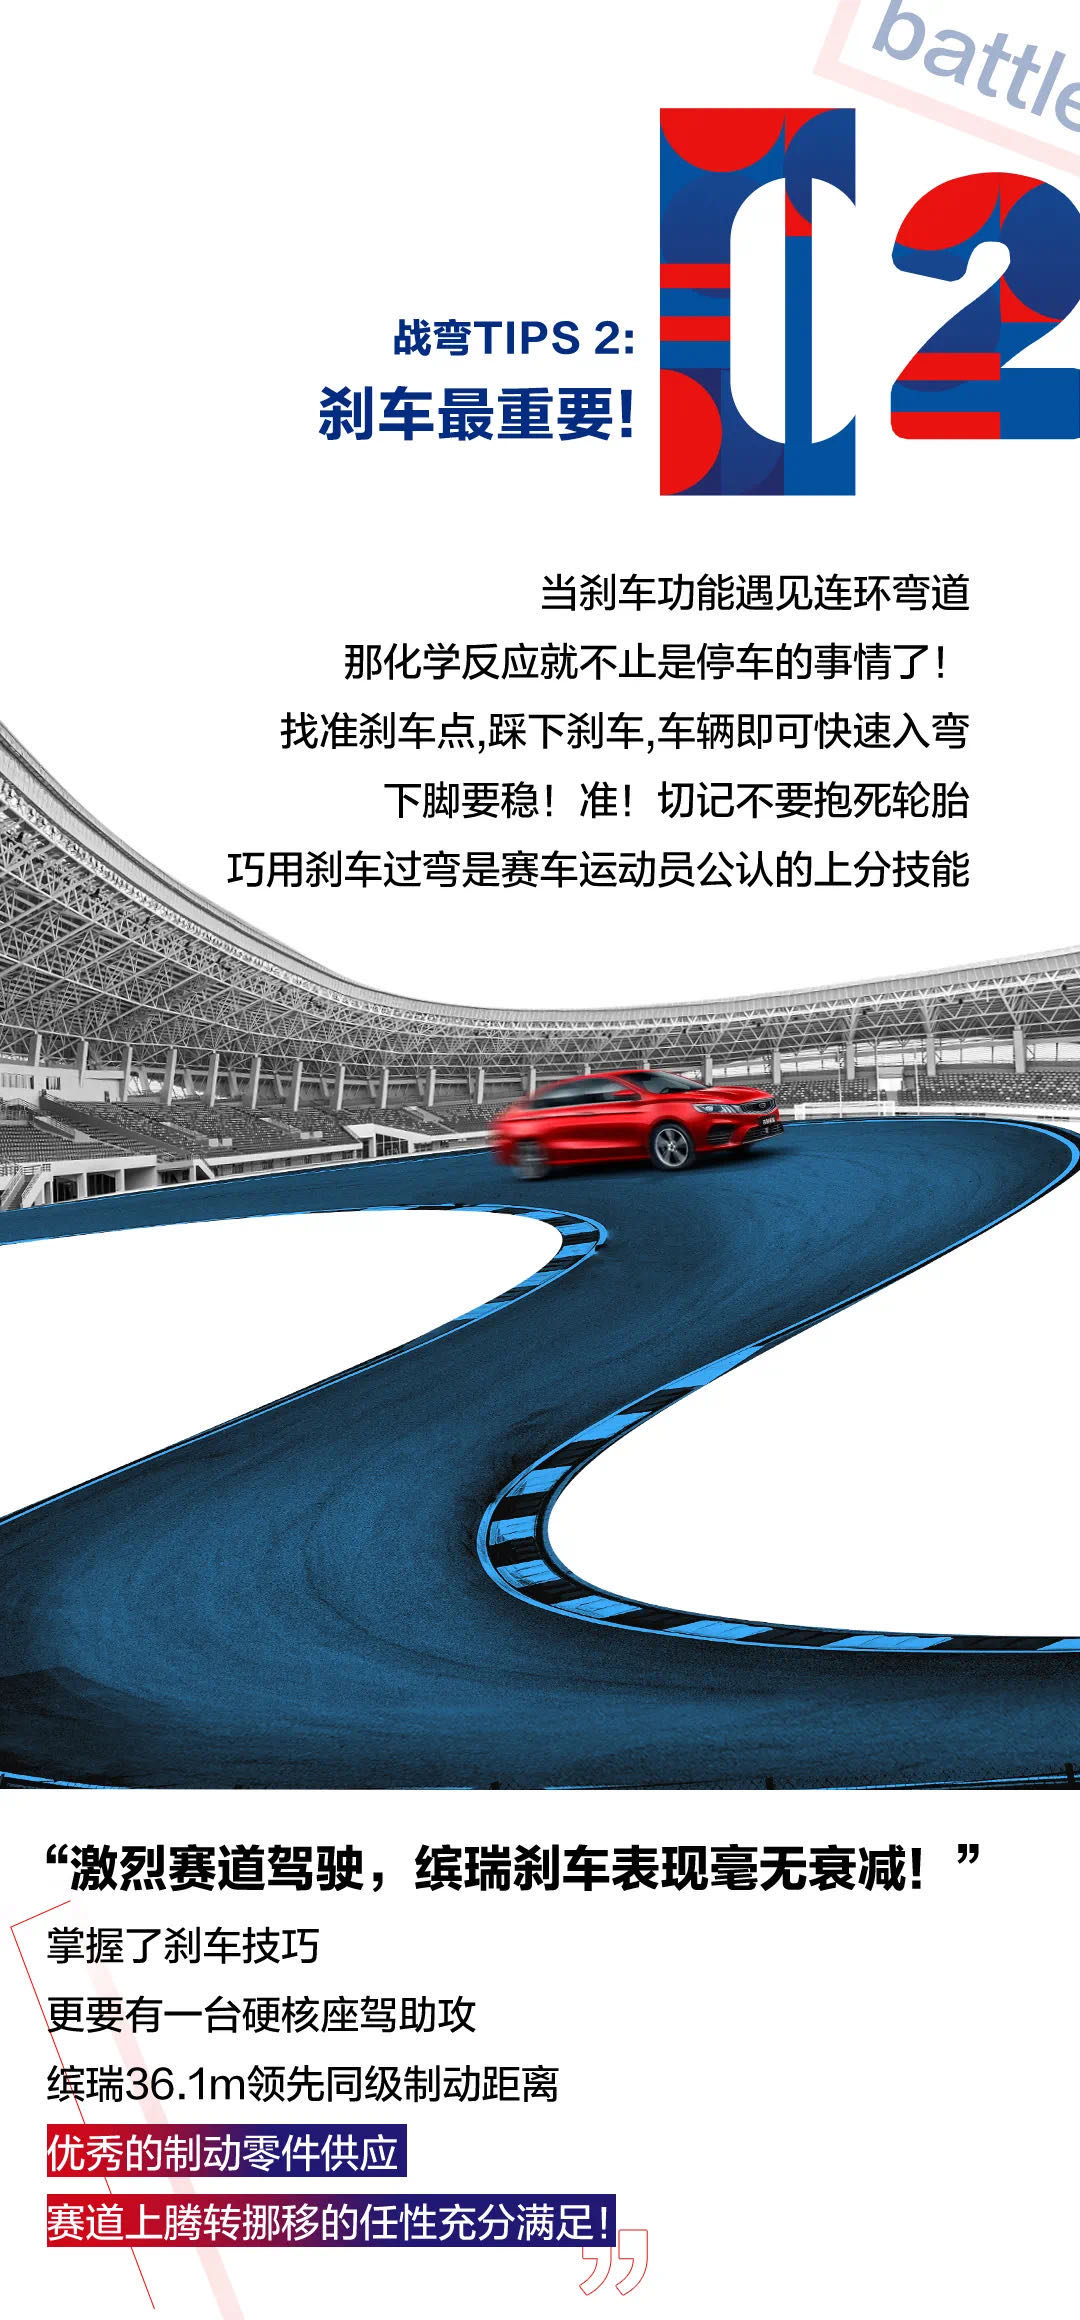 手机赛车网络游戏-速度与激情：虚拟赛道上的驾驶技巧大揭秘